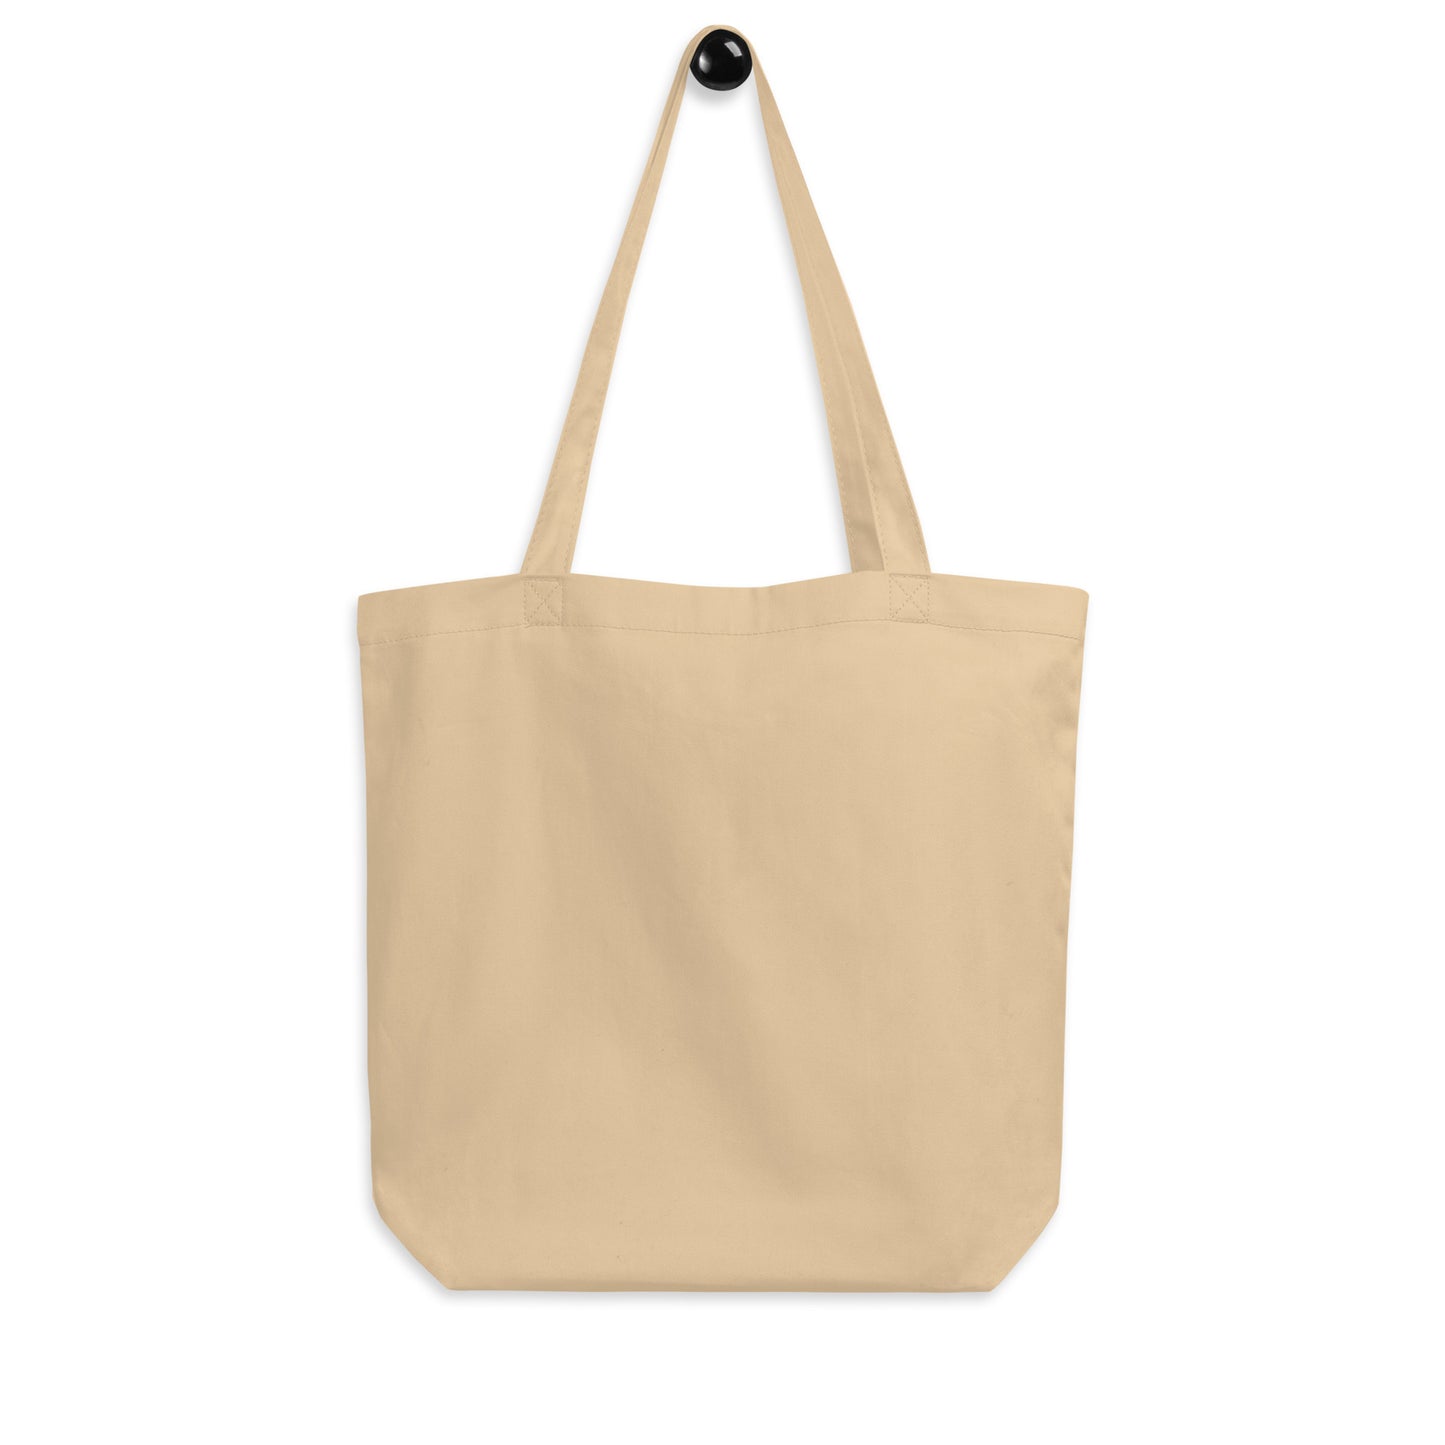 Cool Travel Gift Organic Tote Bag - Viking Blue • LAS Las Vegas • YHM Designs - Image 05